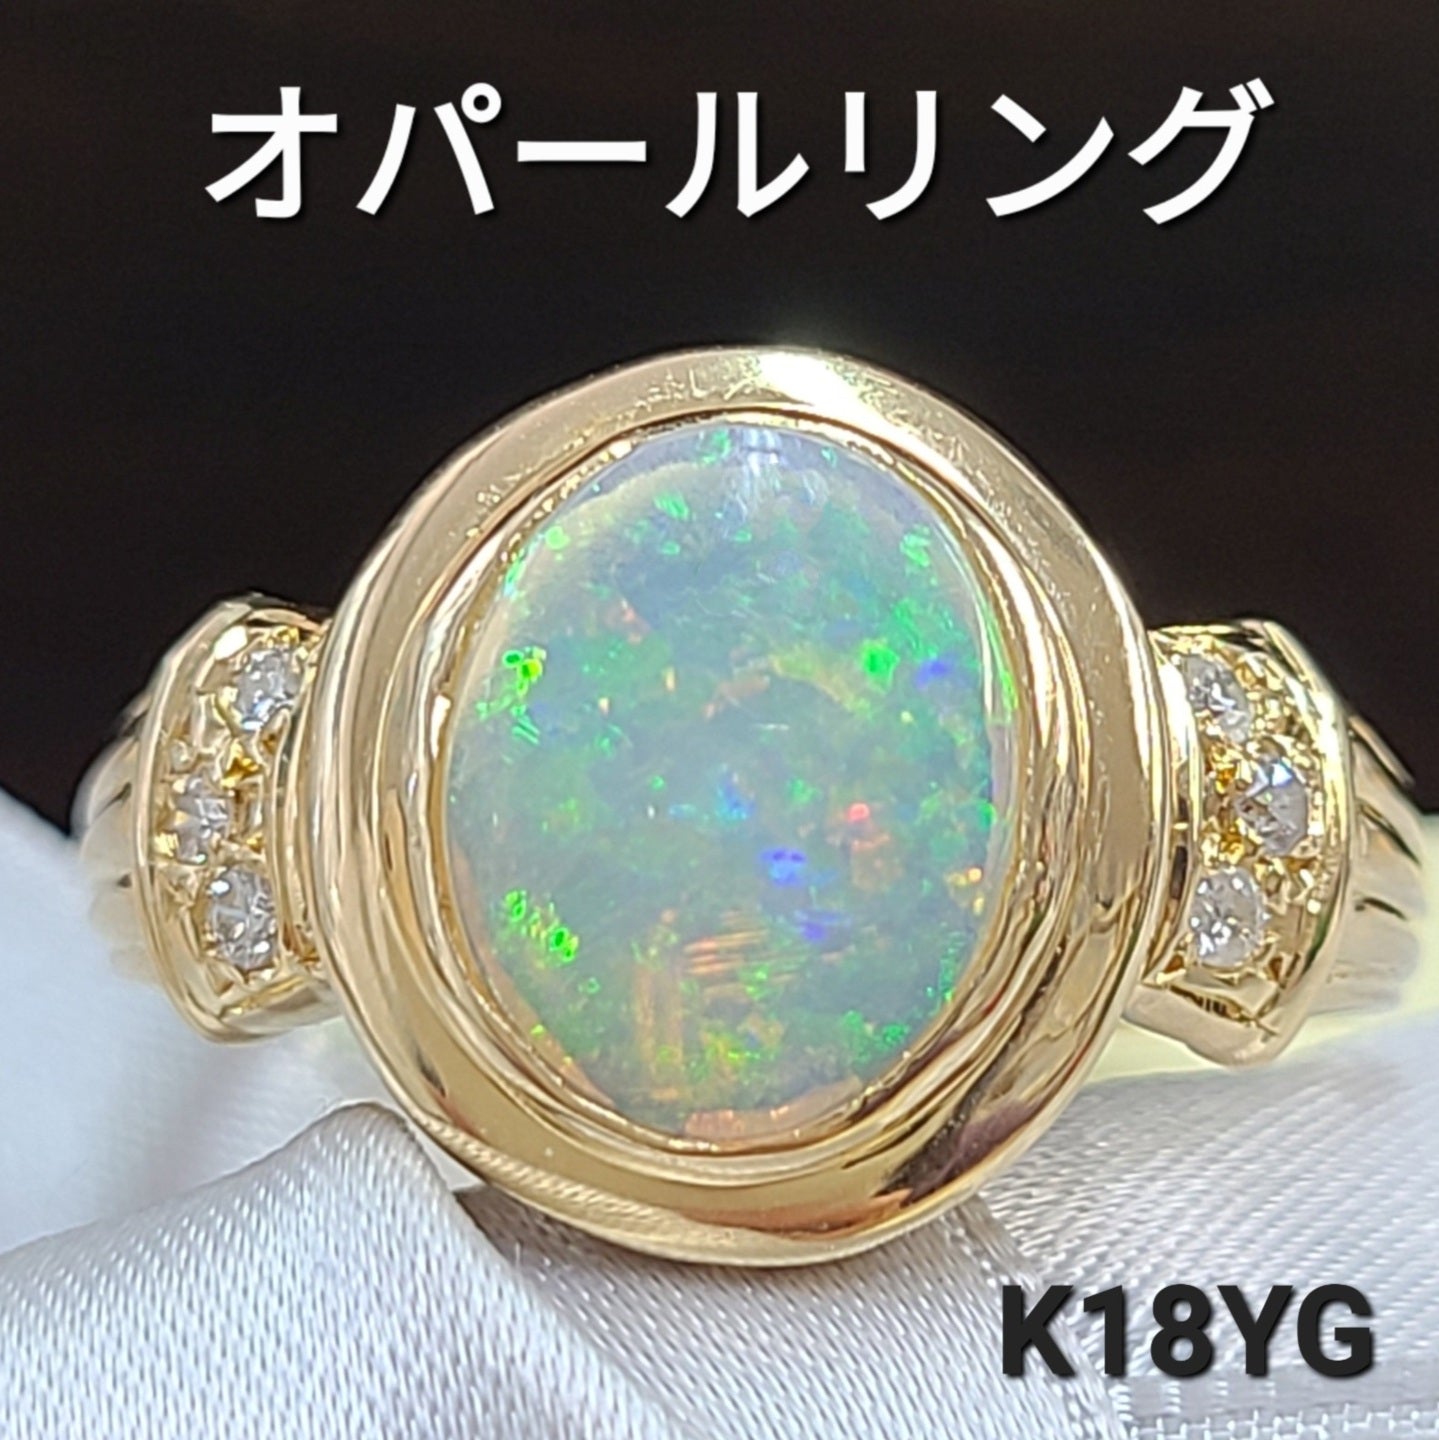 虹色の輝き レインボーオパール ダイヤモンド K18 YG イエロー